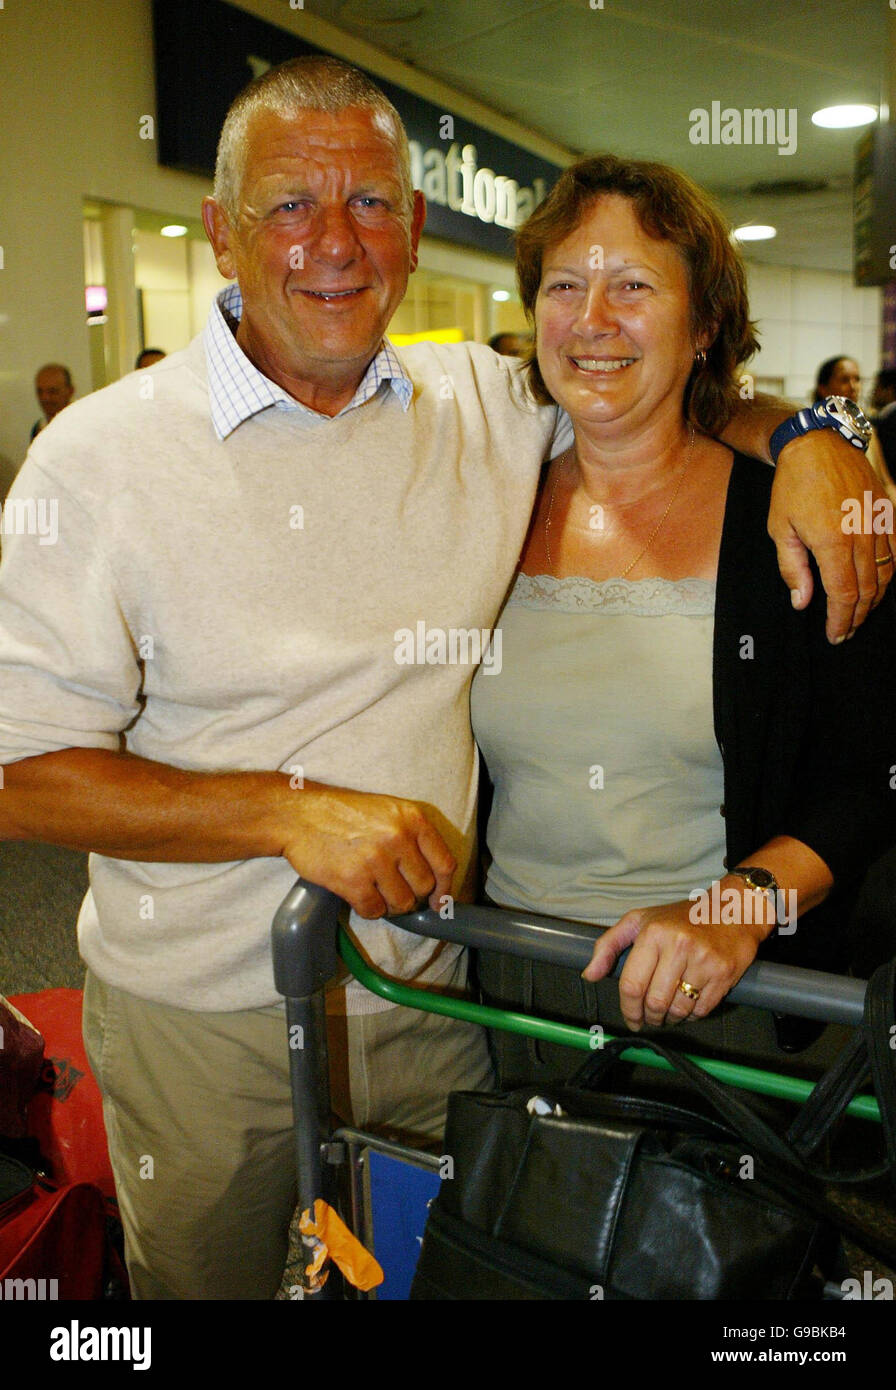 Le rameur Tim Bradbury, accompagné de sa femme Liz, revient à l'aéroport de Gatwick, dans le Sussex, après avoir effectué un voyage à travers l'Atlantique. Banque D'Images